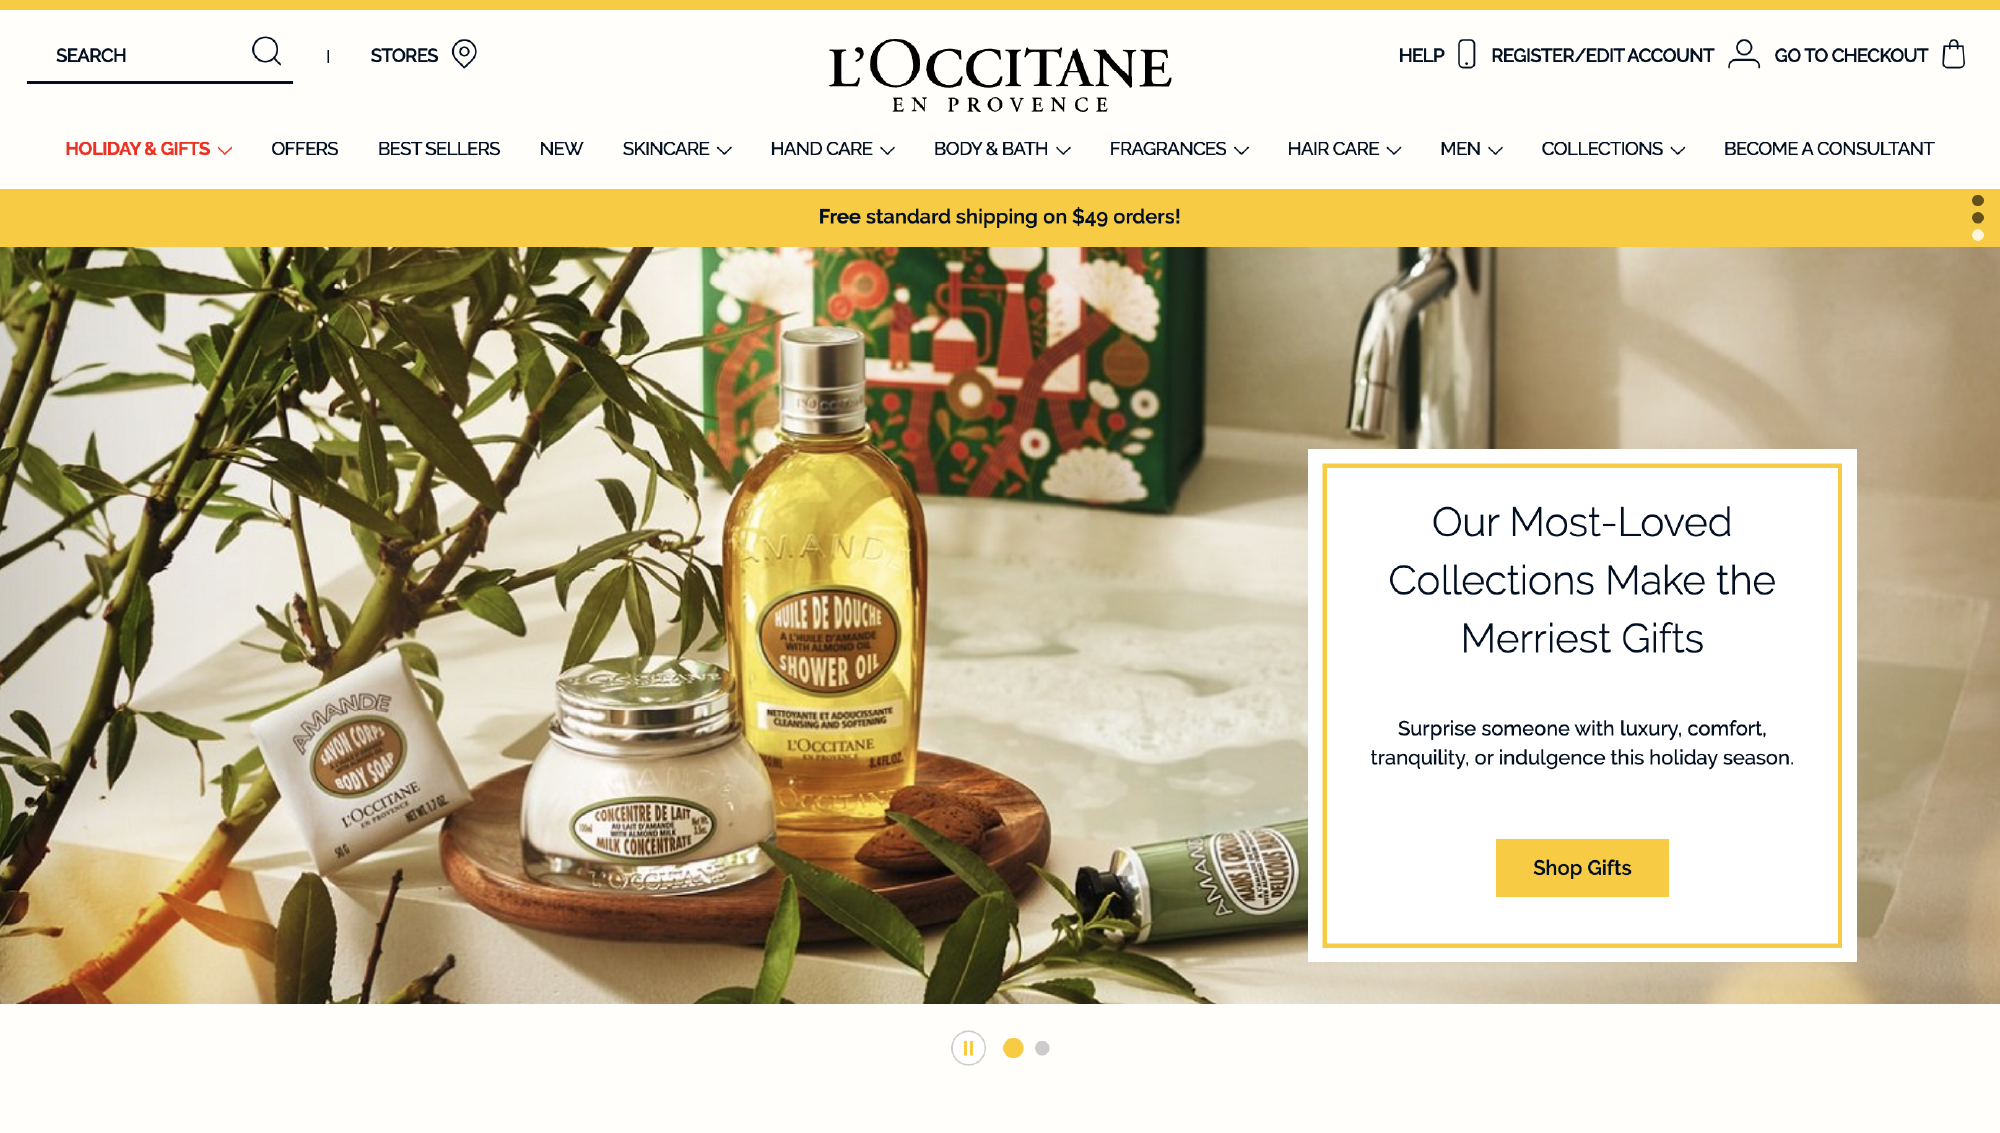 L'Occitane website screenshot showing a wordmark logo